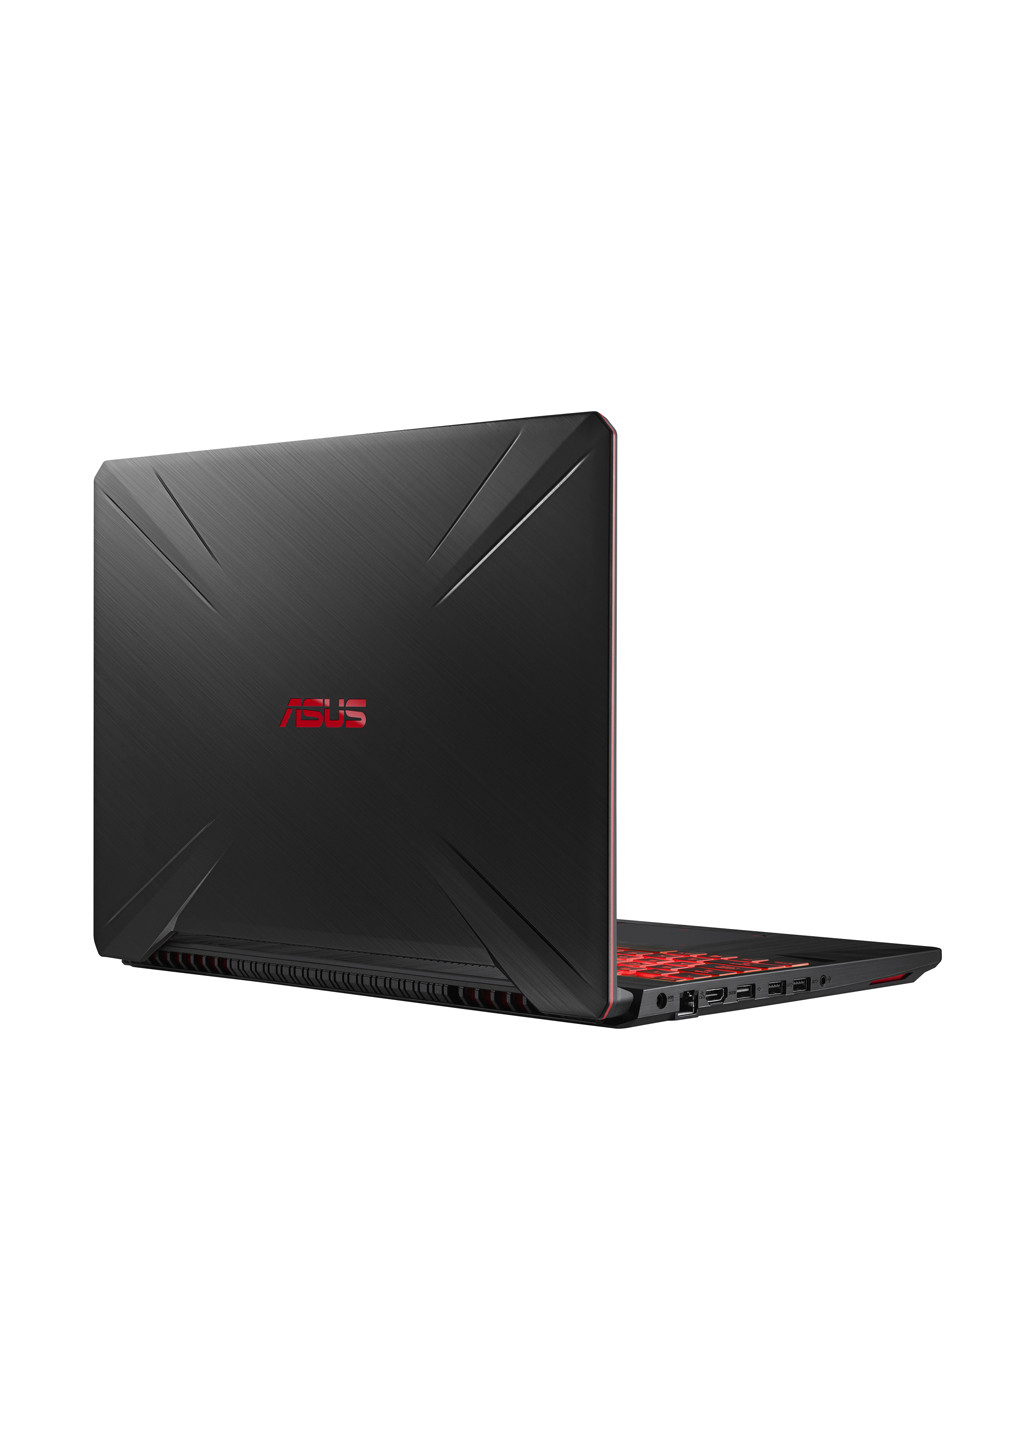 Ноутбук Asus tuf gaming fx505ge-bq129 (90nr00s3-m03640) red fusion (131584977)